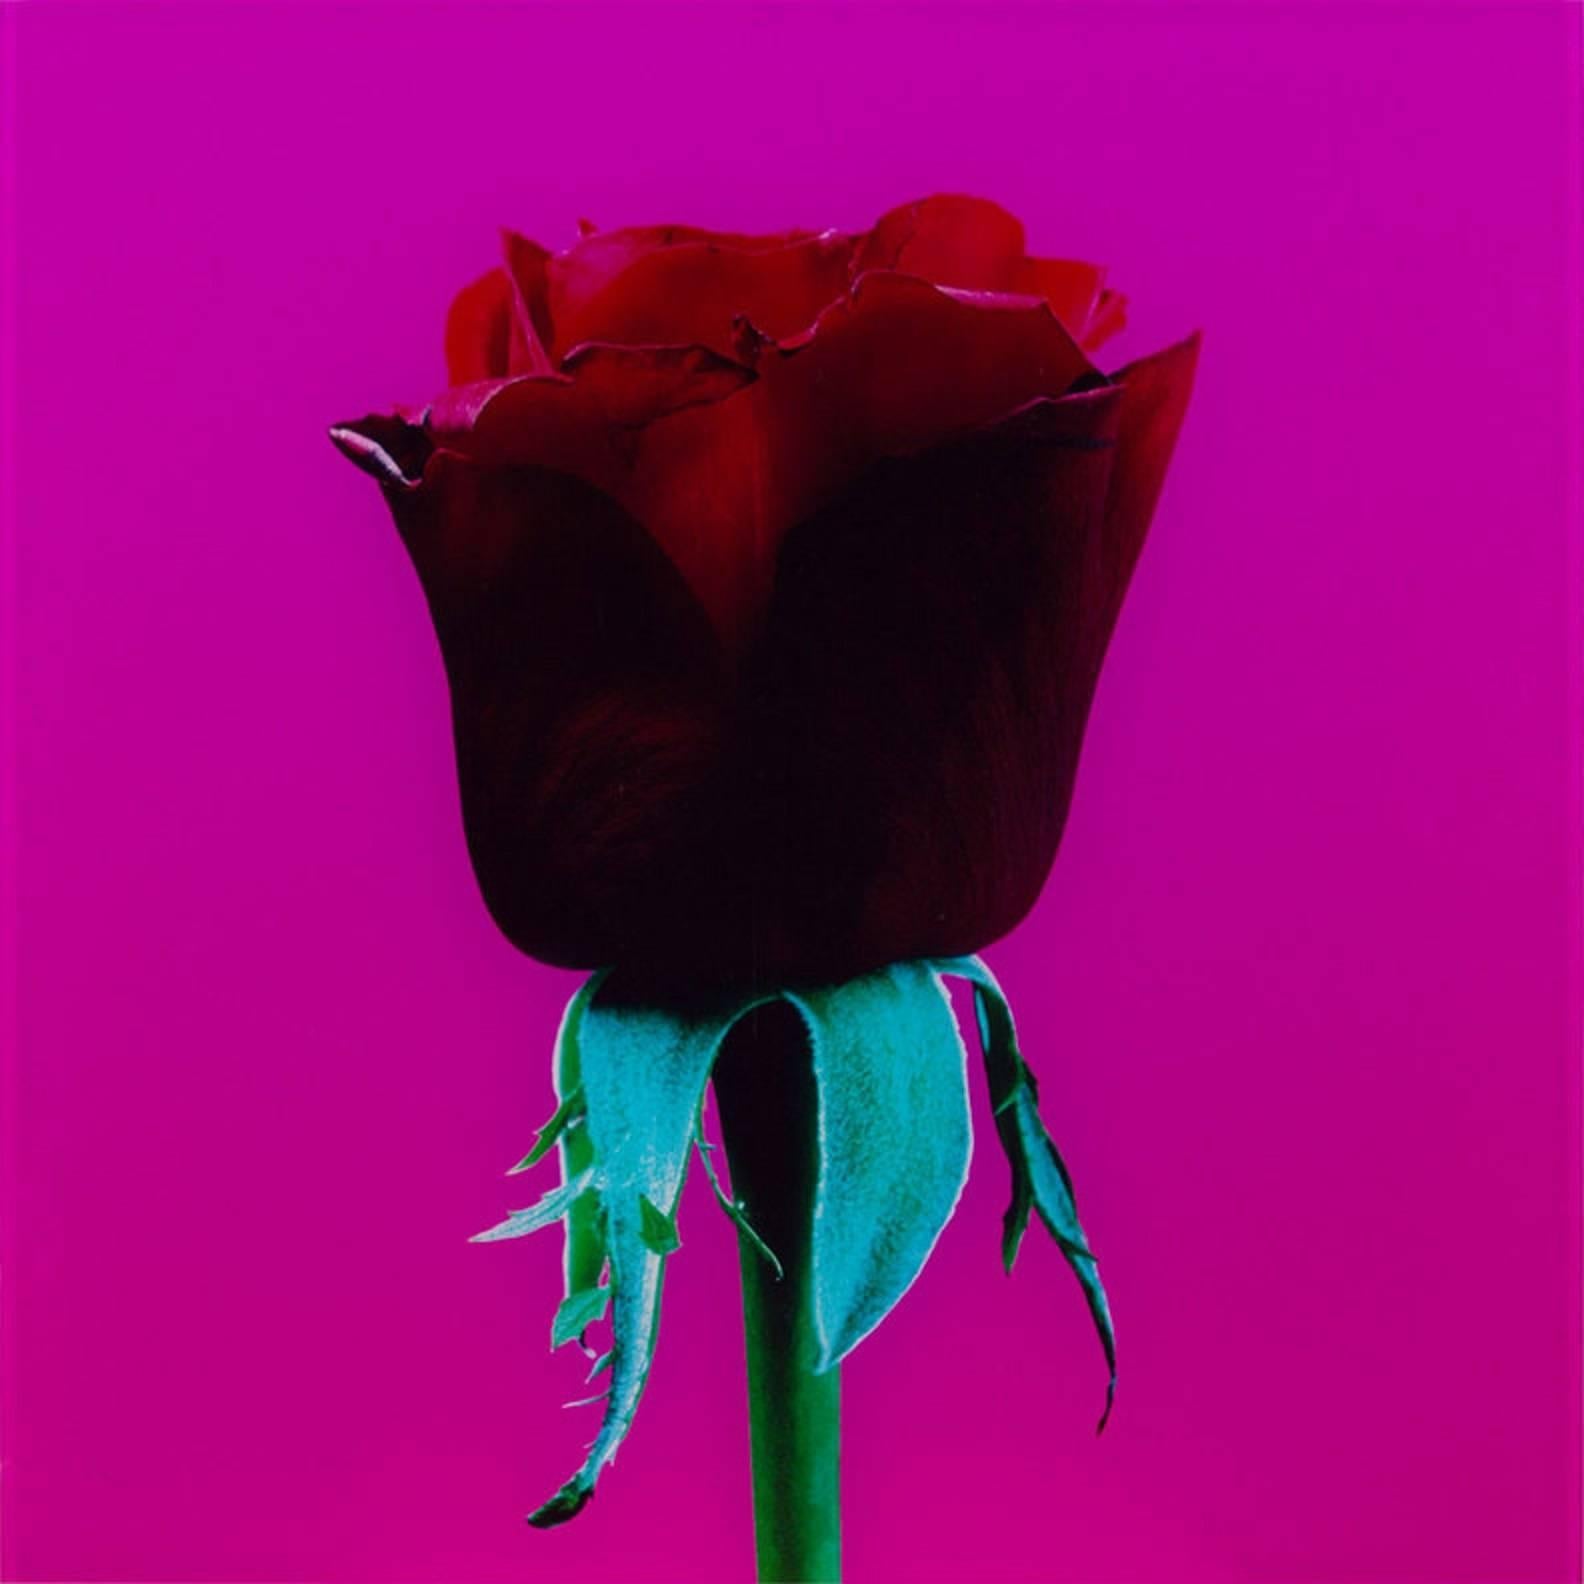 red rose genre